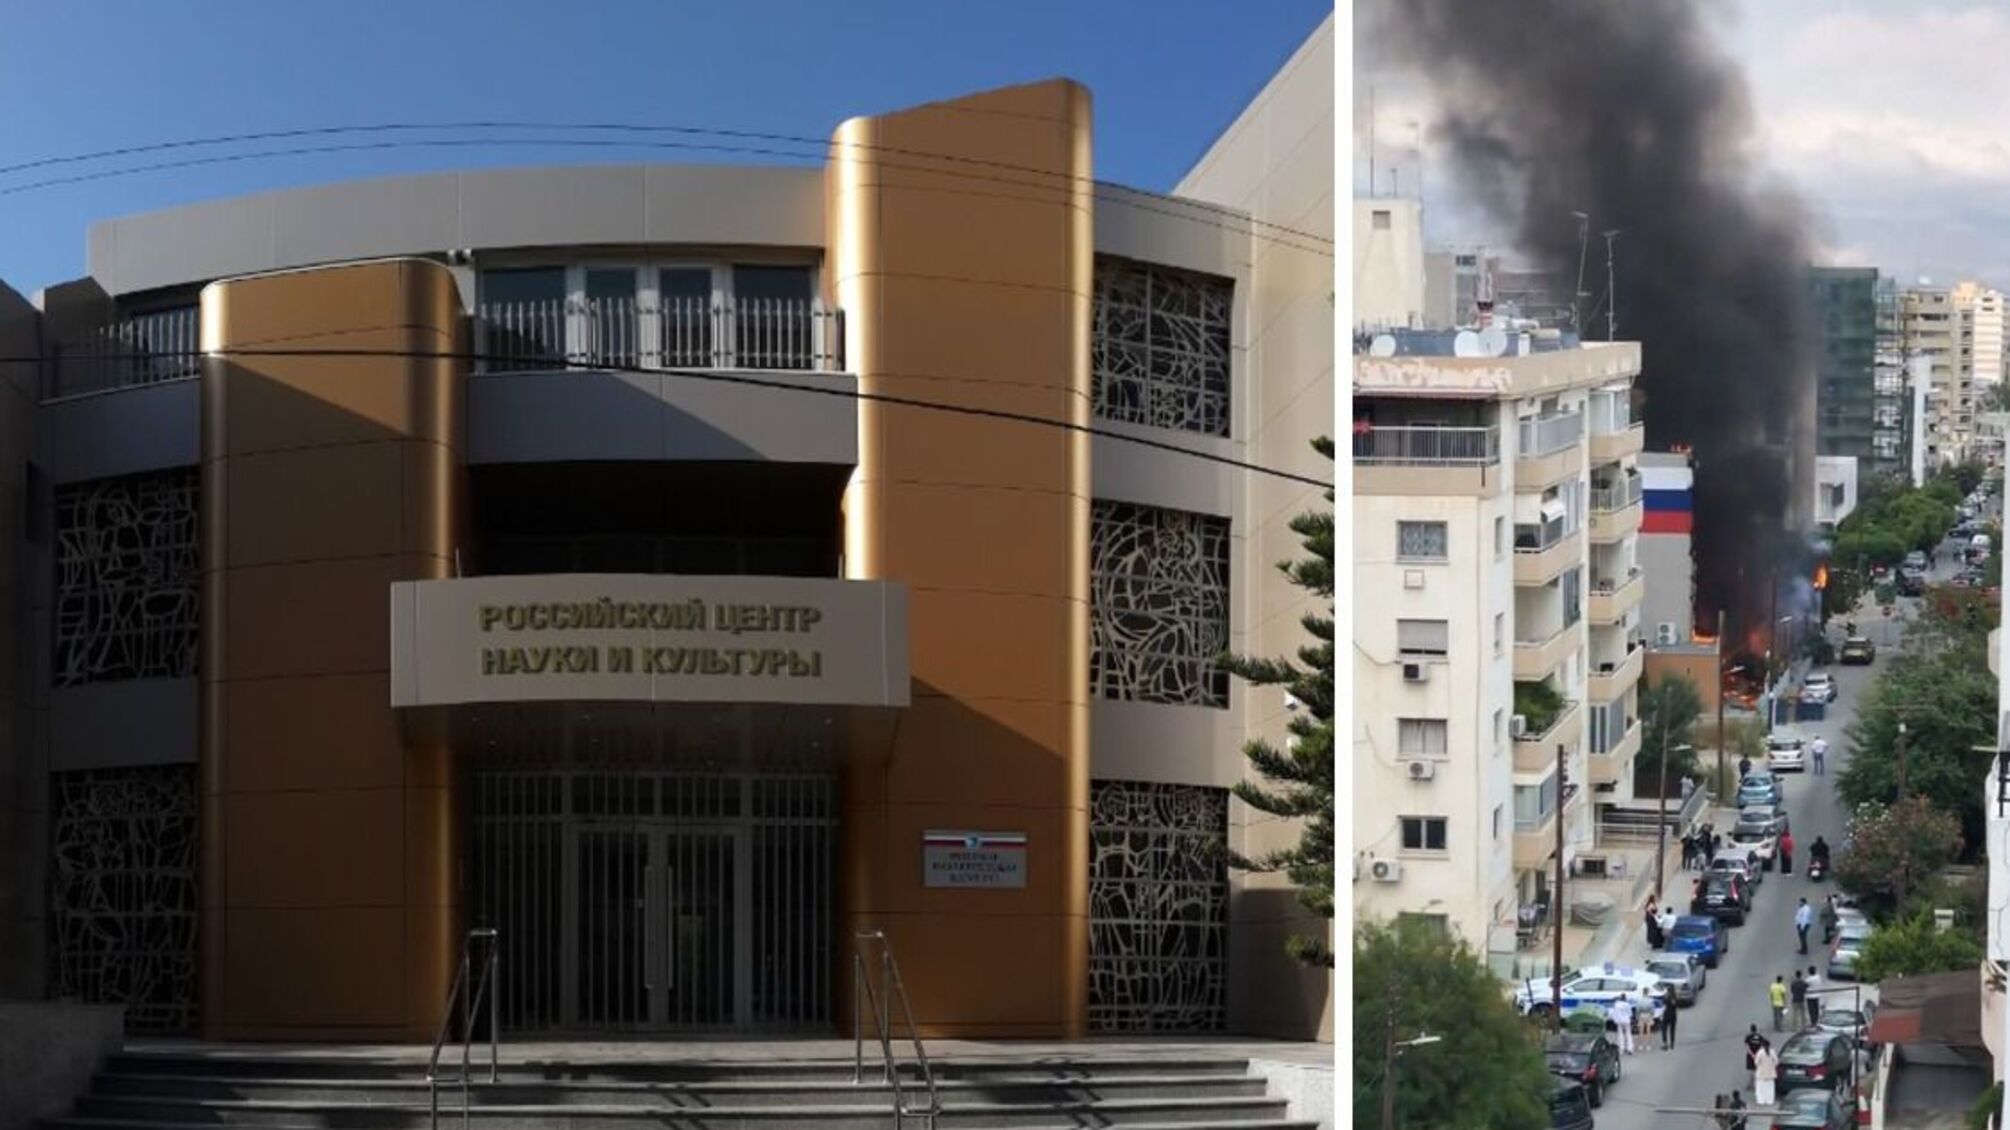 Кипр: Российский центр науки и культуры сгорел среди бела дня